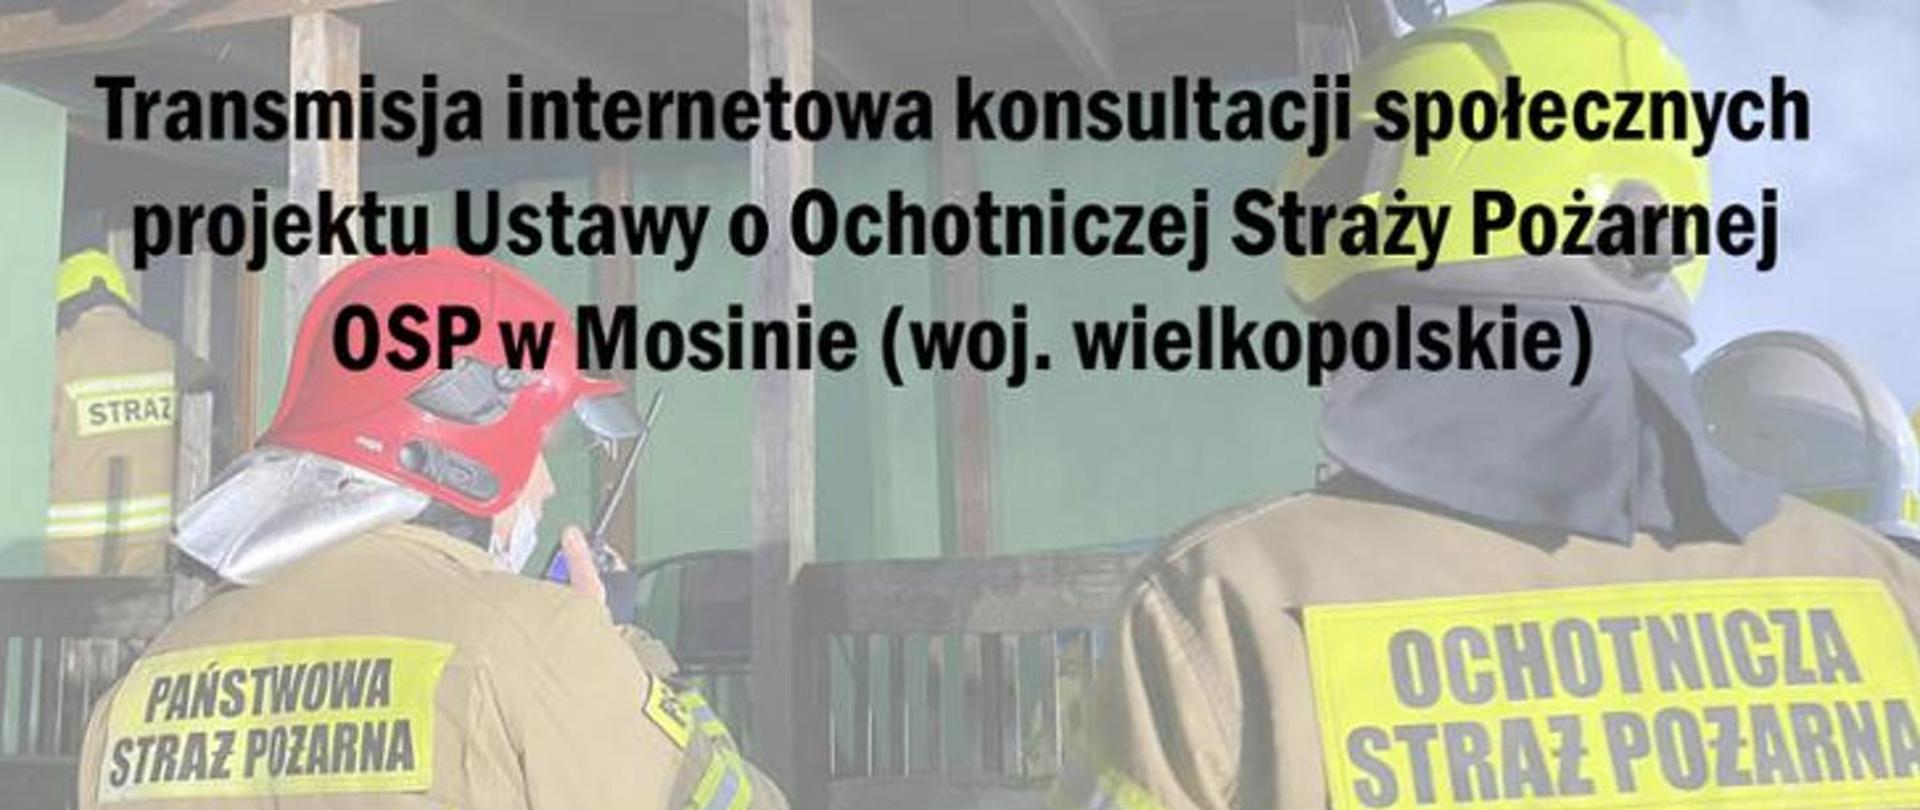 zdjęcie przedstawia dwóch ratowników z lewej PSP, z prawej OSP . Na całym obrazie napis "transmisja internetowa konsultacji społecznych projektu Ustawy o Ochotniczej Straży Pożarnej OSP w Mosinie (woj. wielkopolskie)